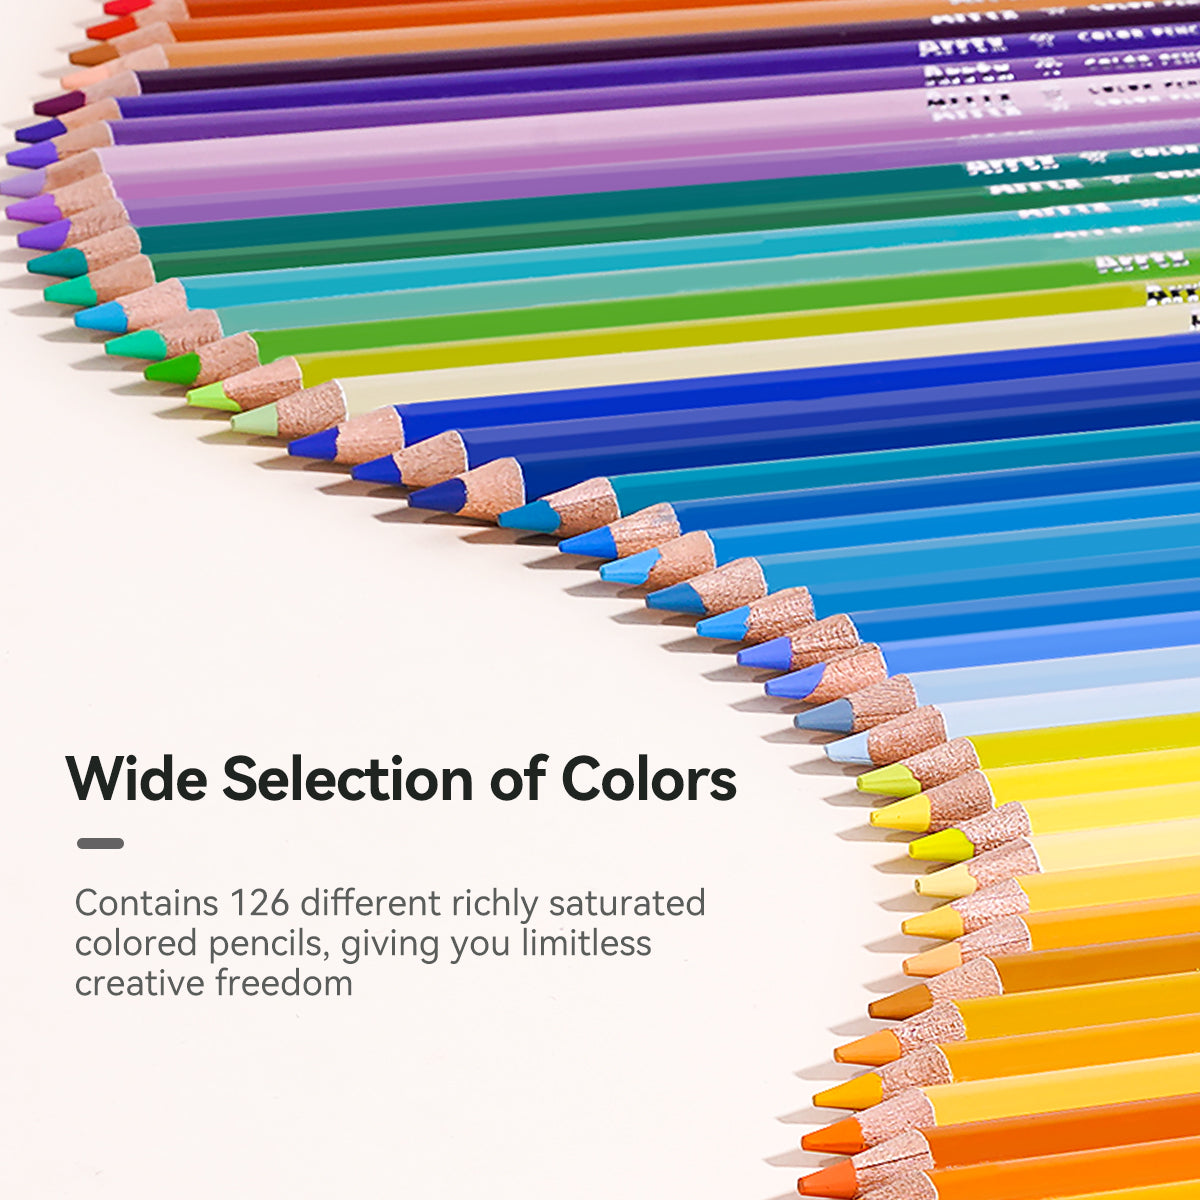 Arrtx 126 Coloring Pencils Review ( + Details of Discount) 